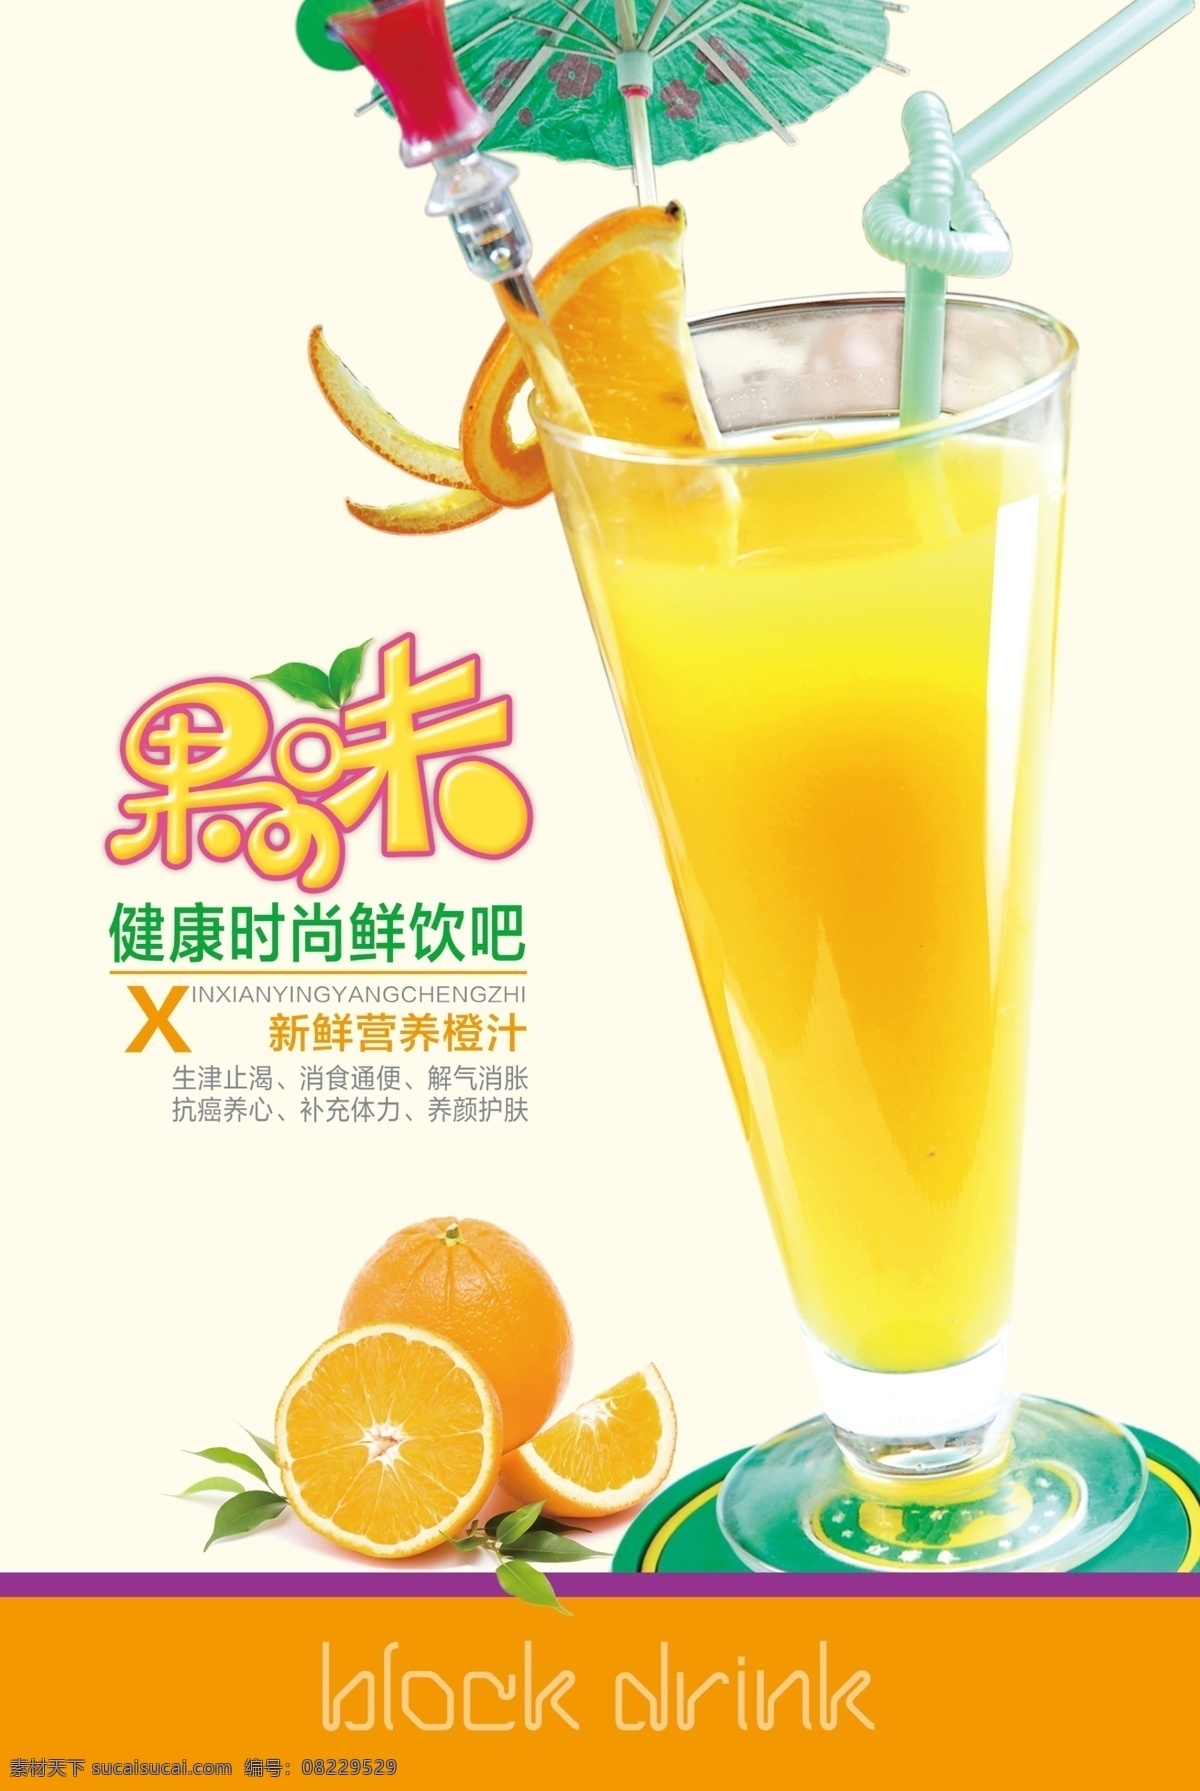 柳橙汁 橙汁 饮料 果汁 海报 冷饮 其他模版 广告设计模板 源文件